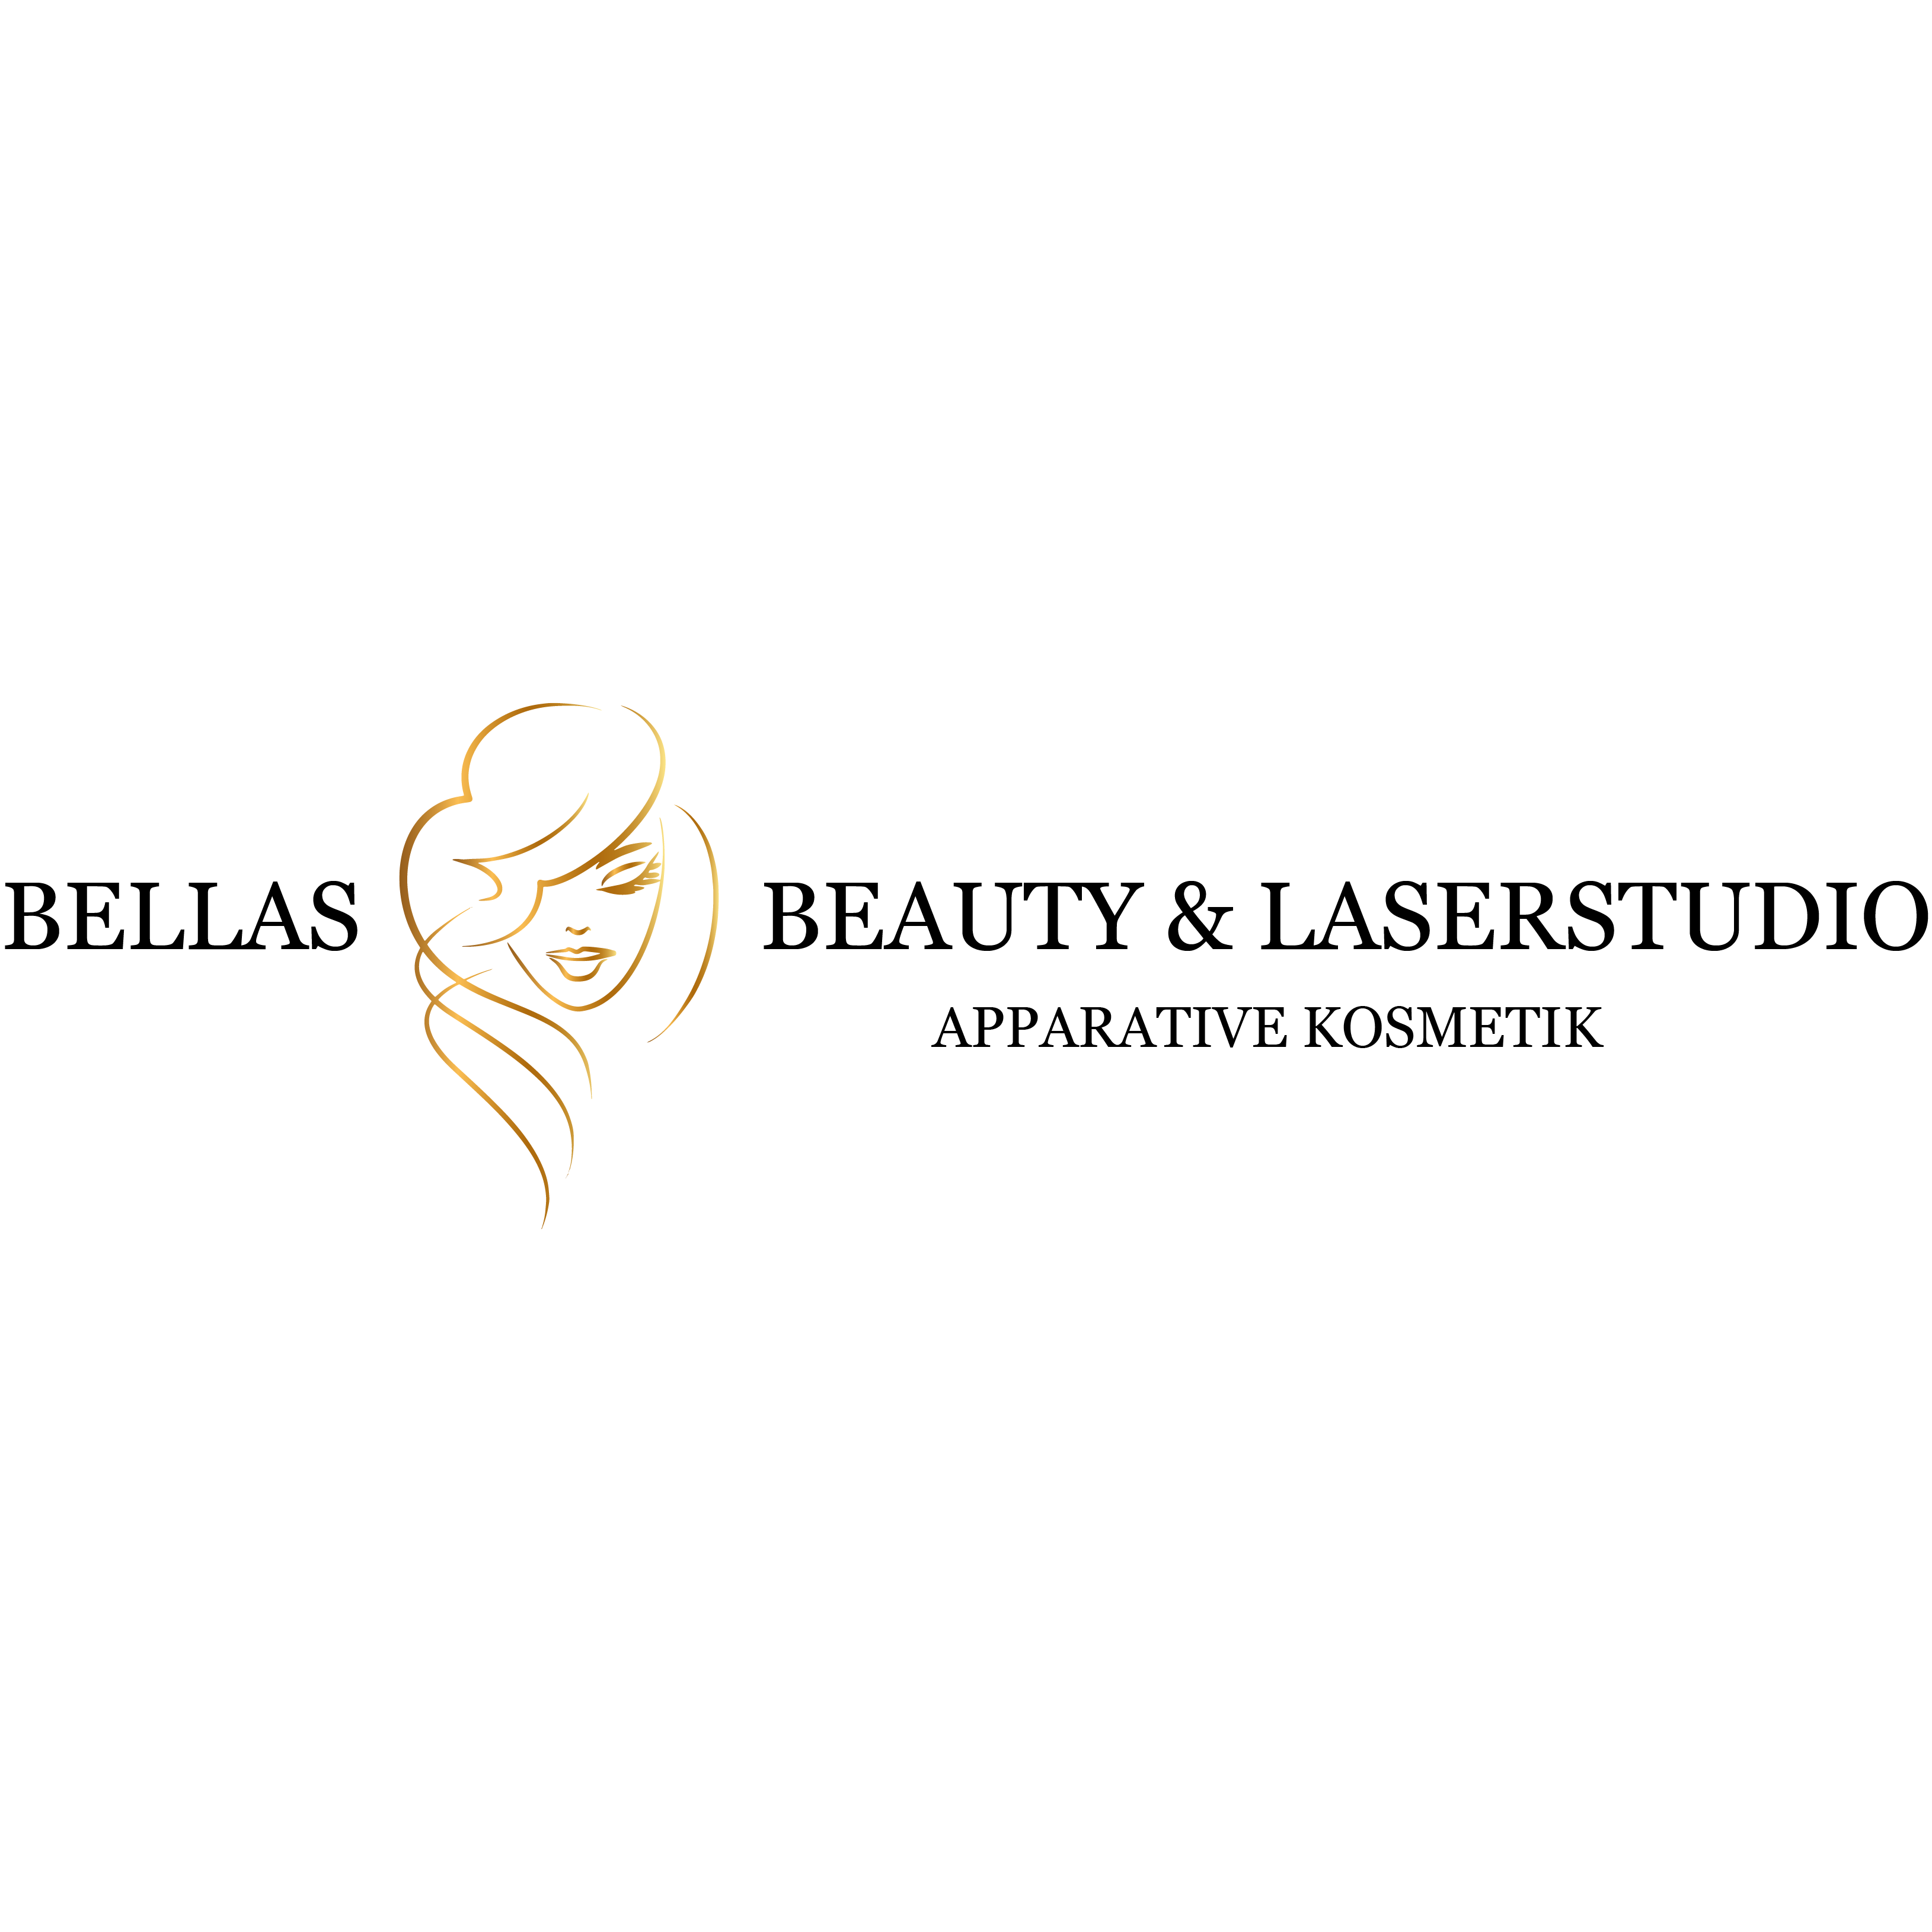 Bellas Beauty & Laserstudio in Erkrath - Logo